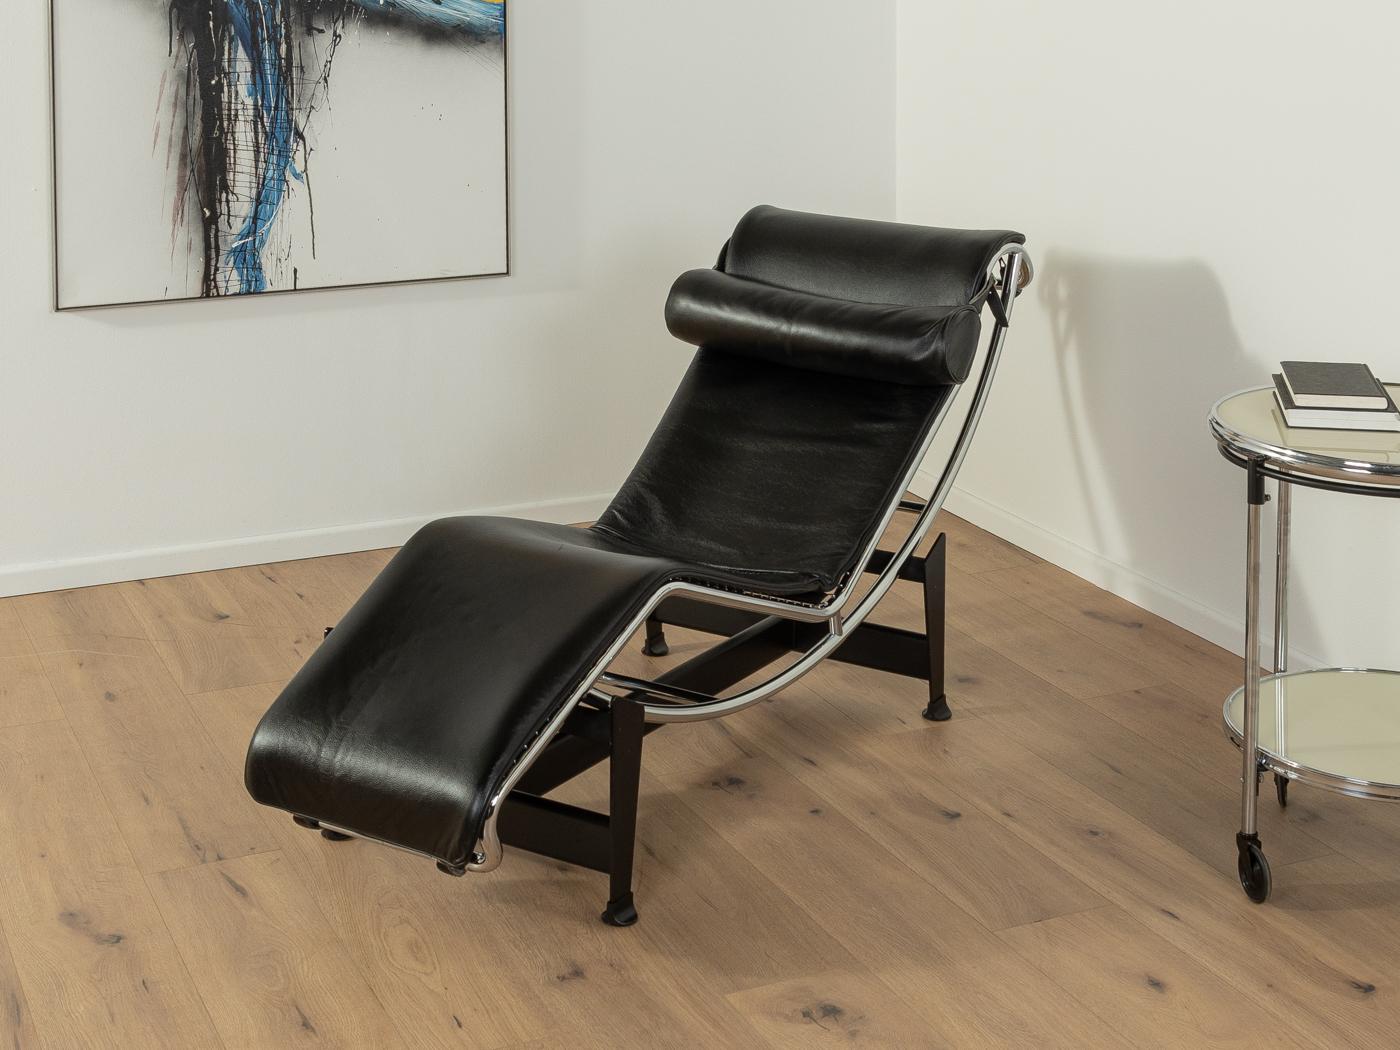 Légendaire chaise longue LC 4 conçue par LE CORBUSIER pour Cassina en 1928. Cadre chromé de haute qualité sur une construction en acier noir avec une surface inclinable avec revêtement en cuir original noir. En parfait état, avec le Label